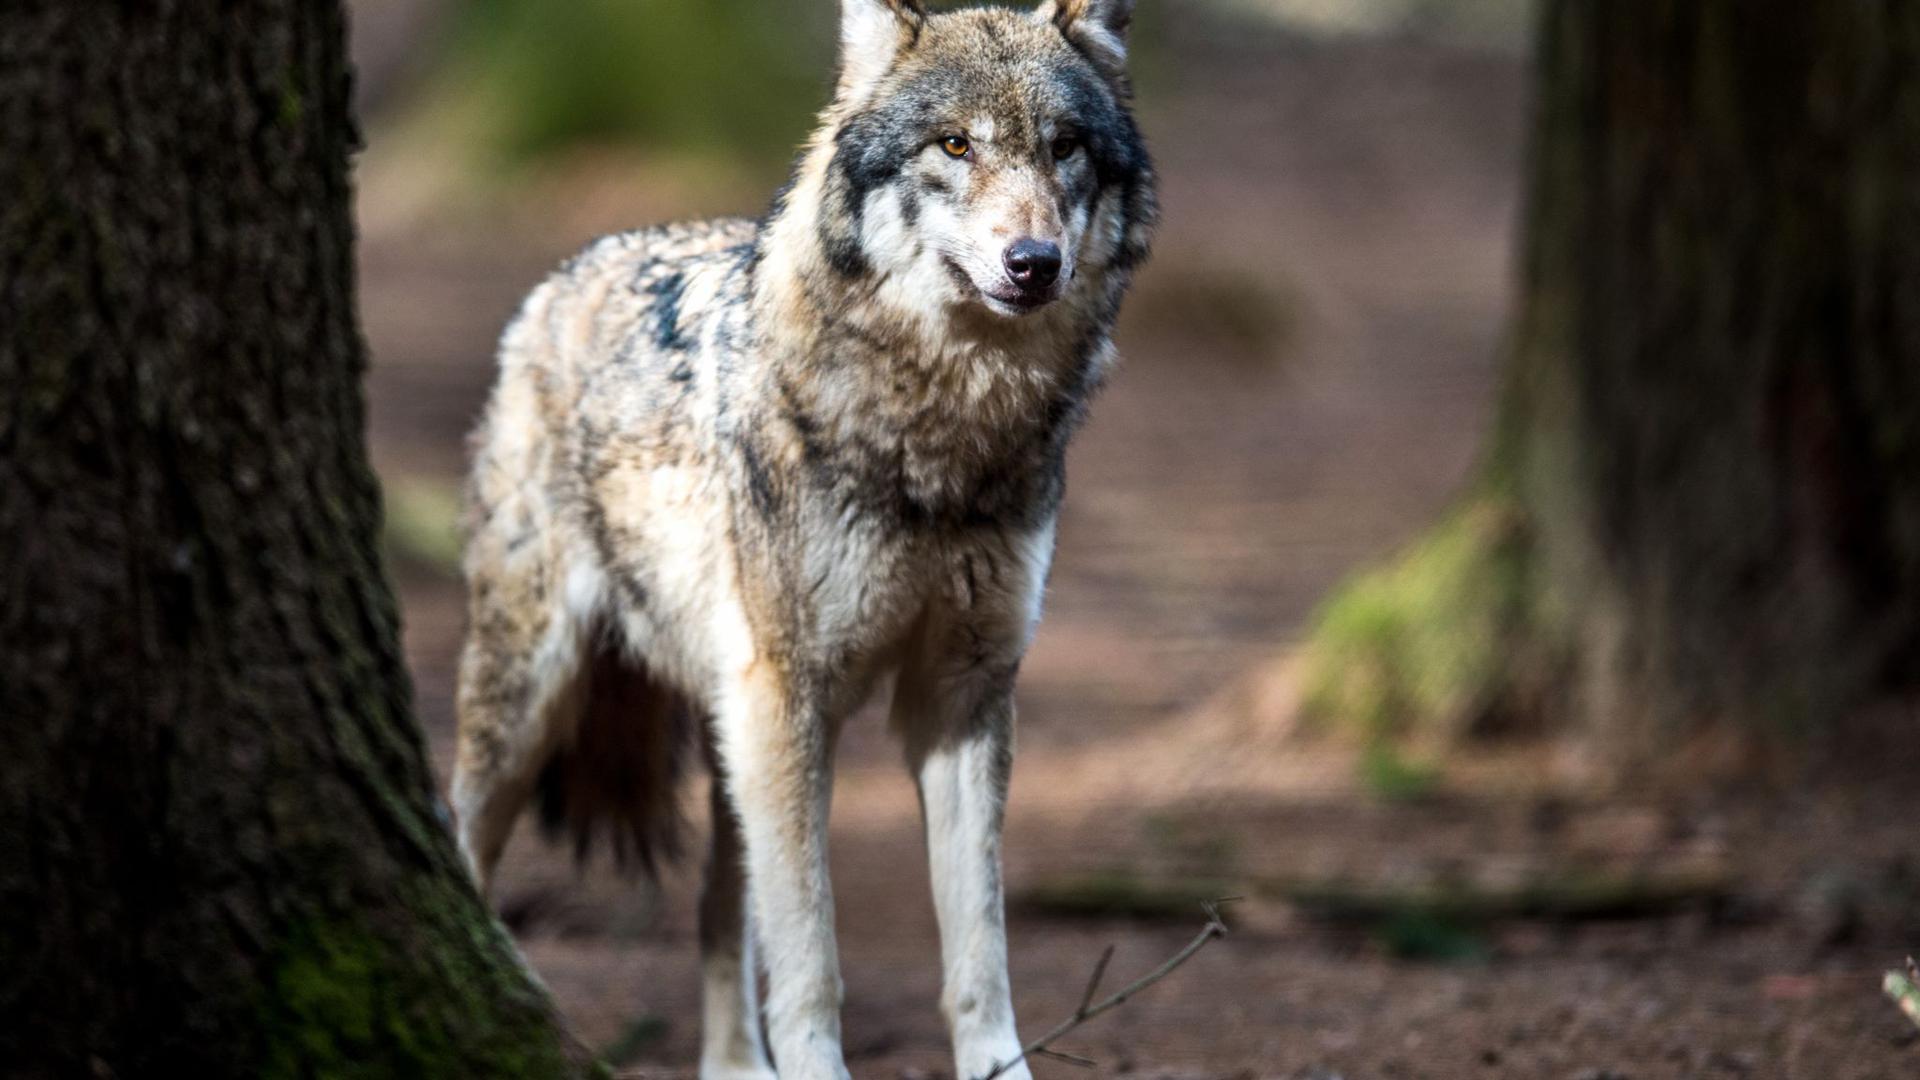 Ein Wolf (Canis lupus) steht in einem Wildpark in seinem Gehege.